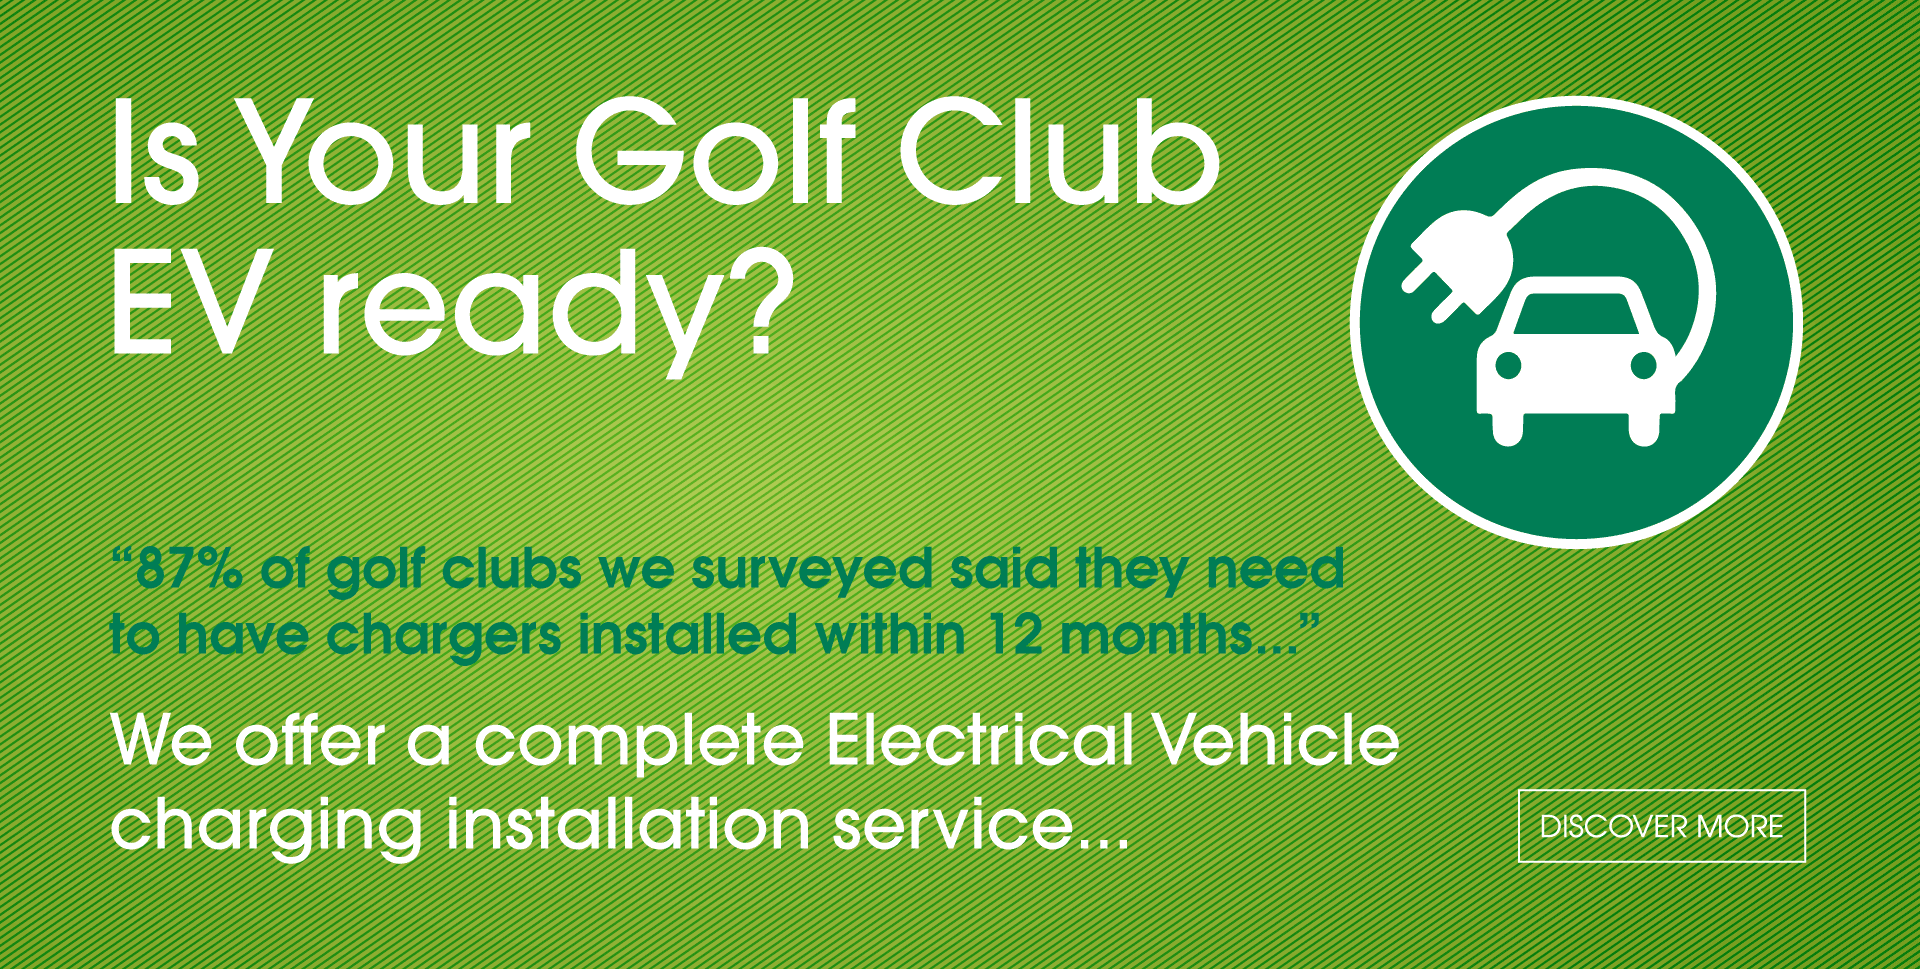 Is your golf club EV ready?